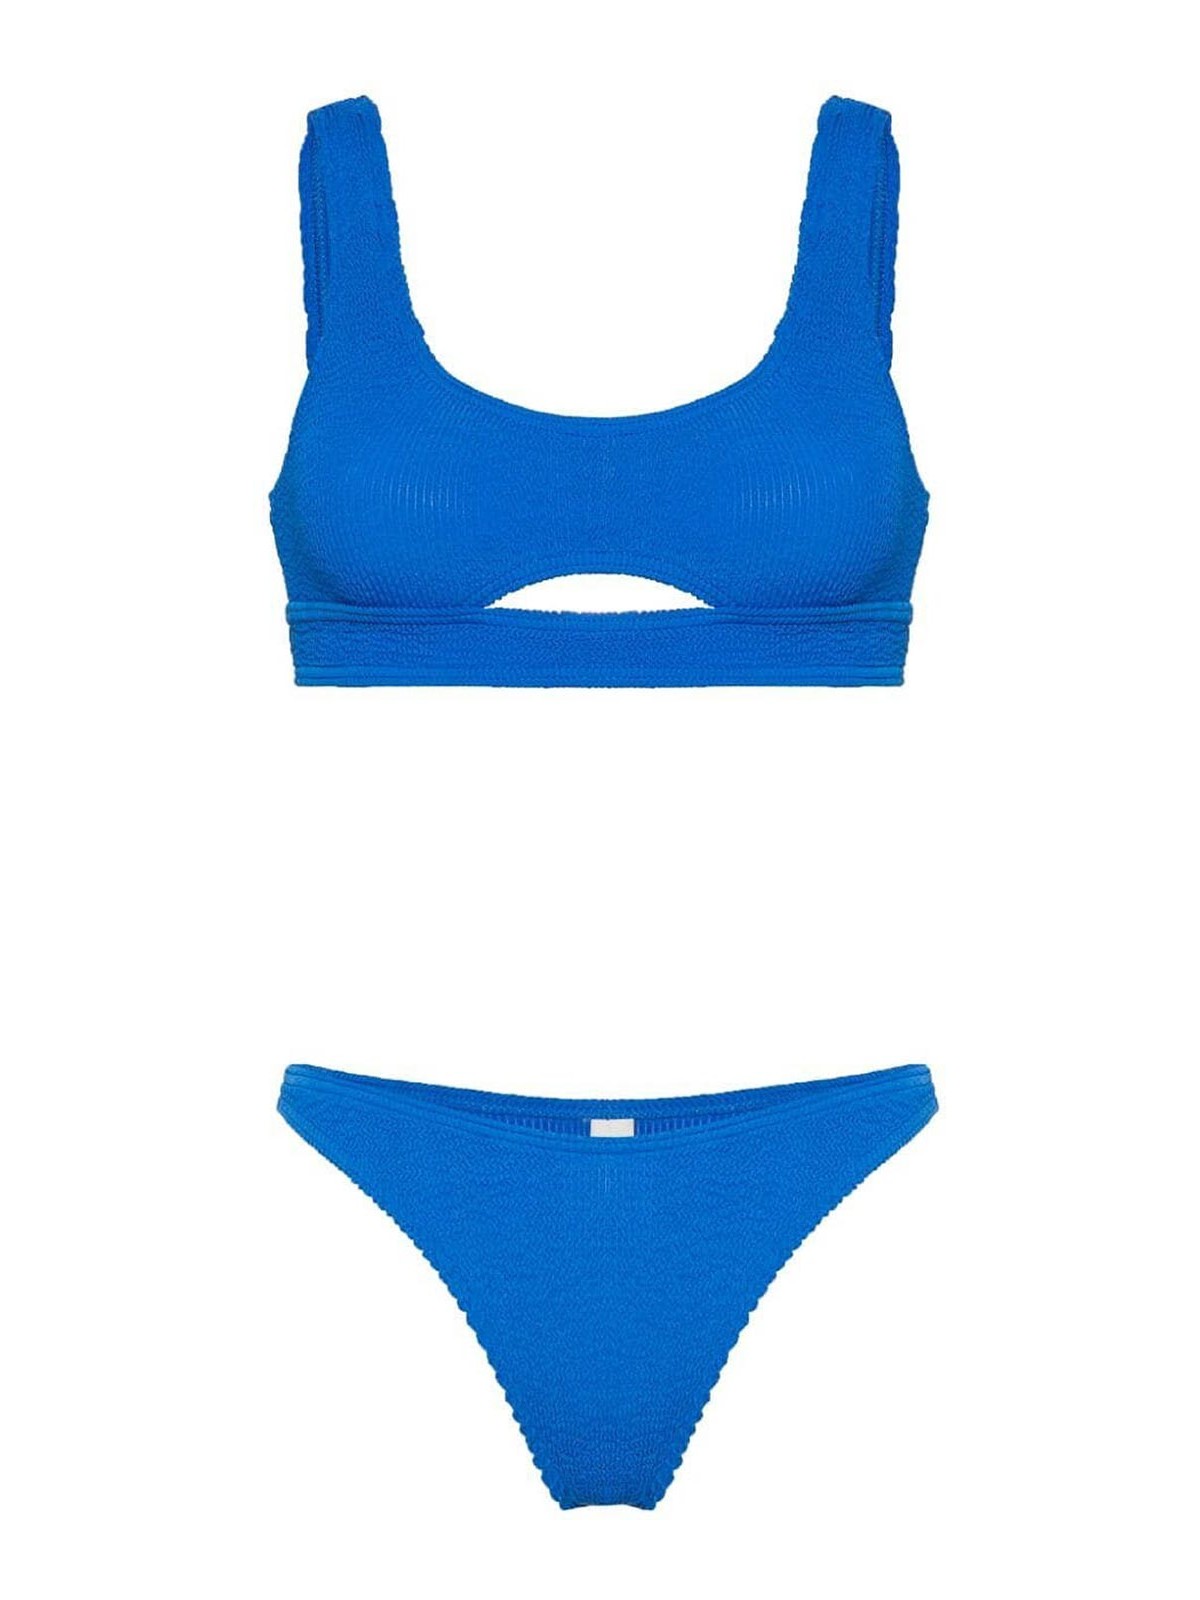 Bondeye Cobalt Bikini Set In Blue